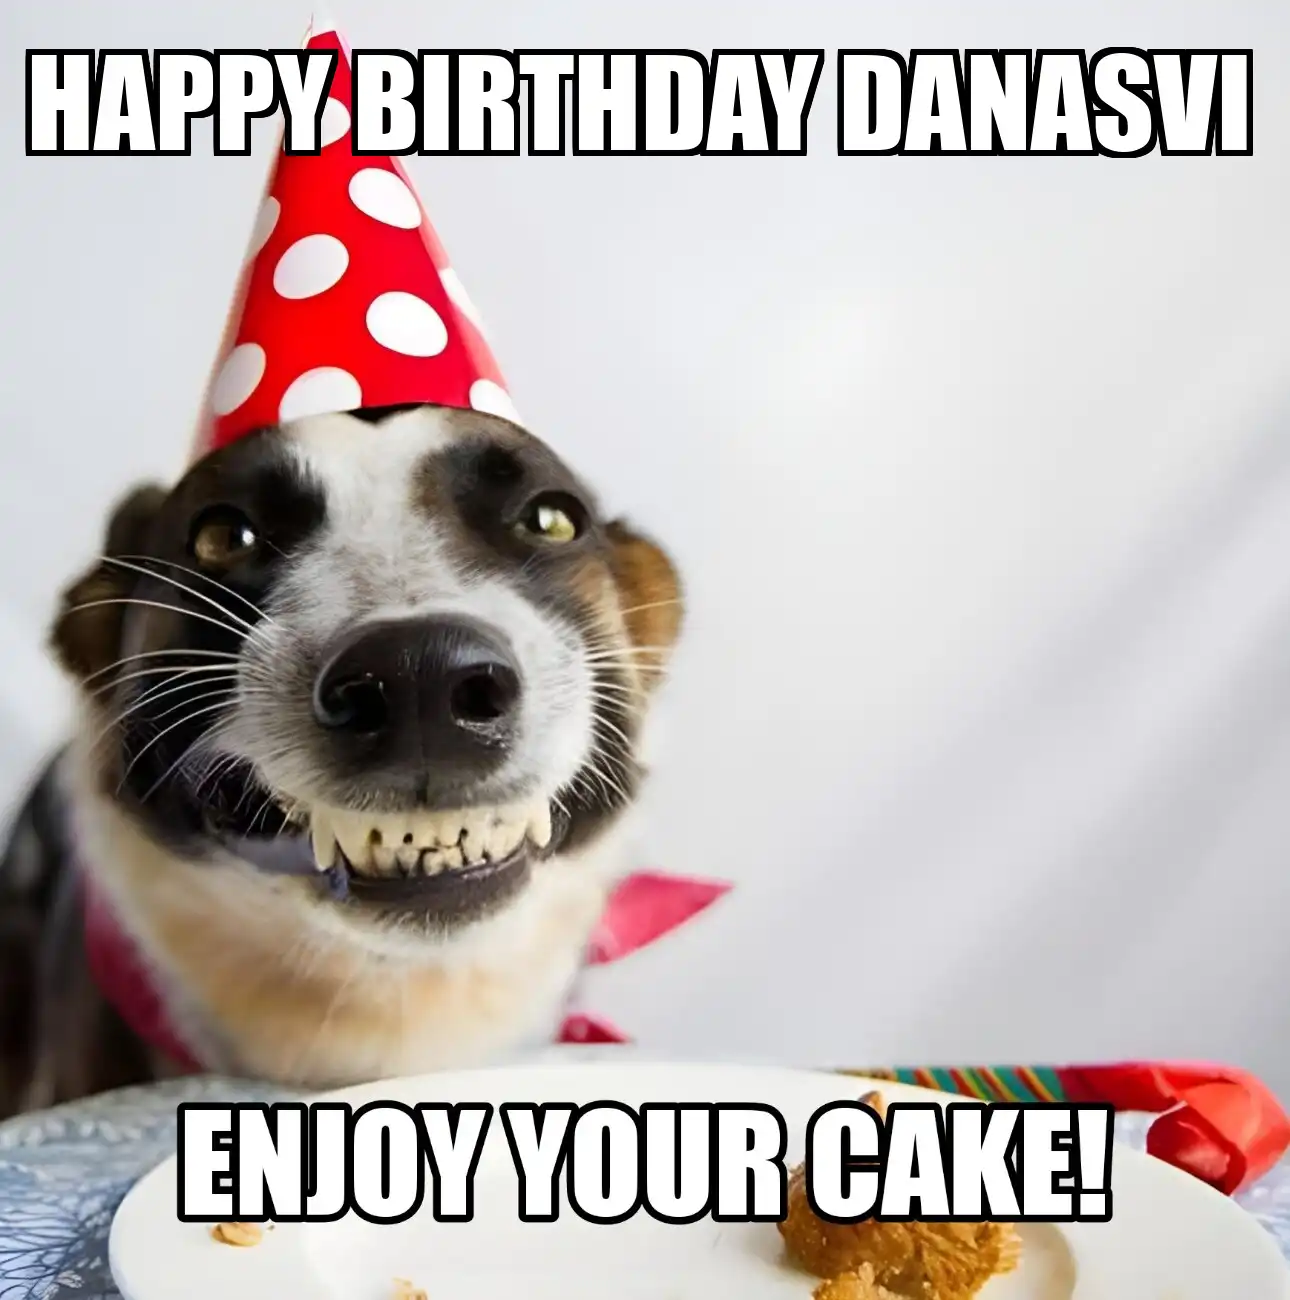 Happy Birthday Danasvi Enjoy Your Cake Dog Meme